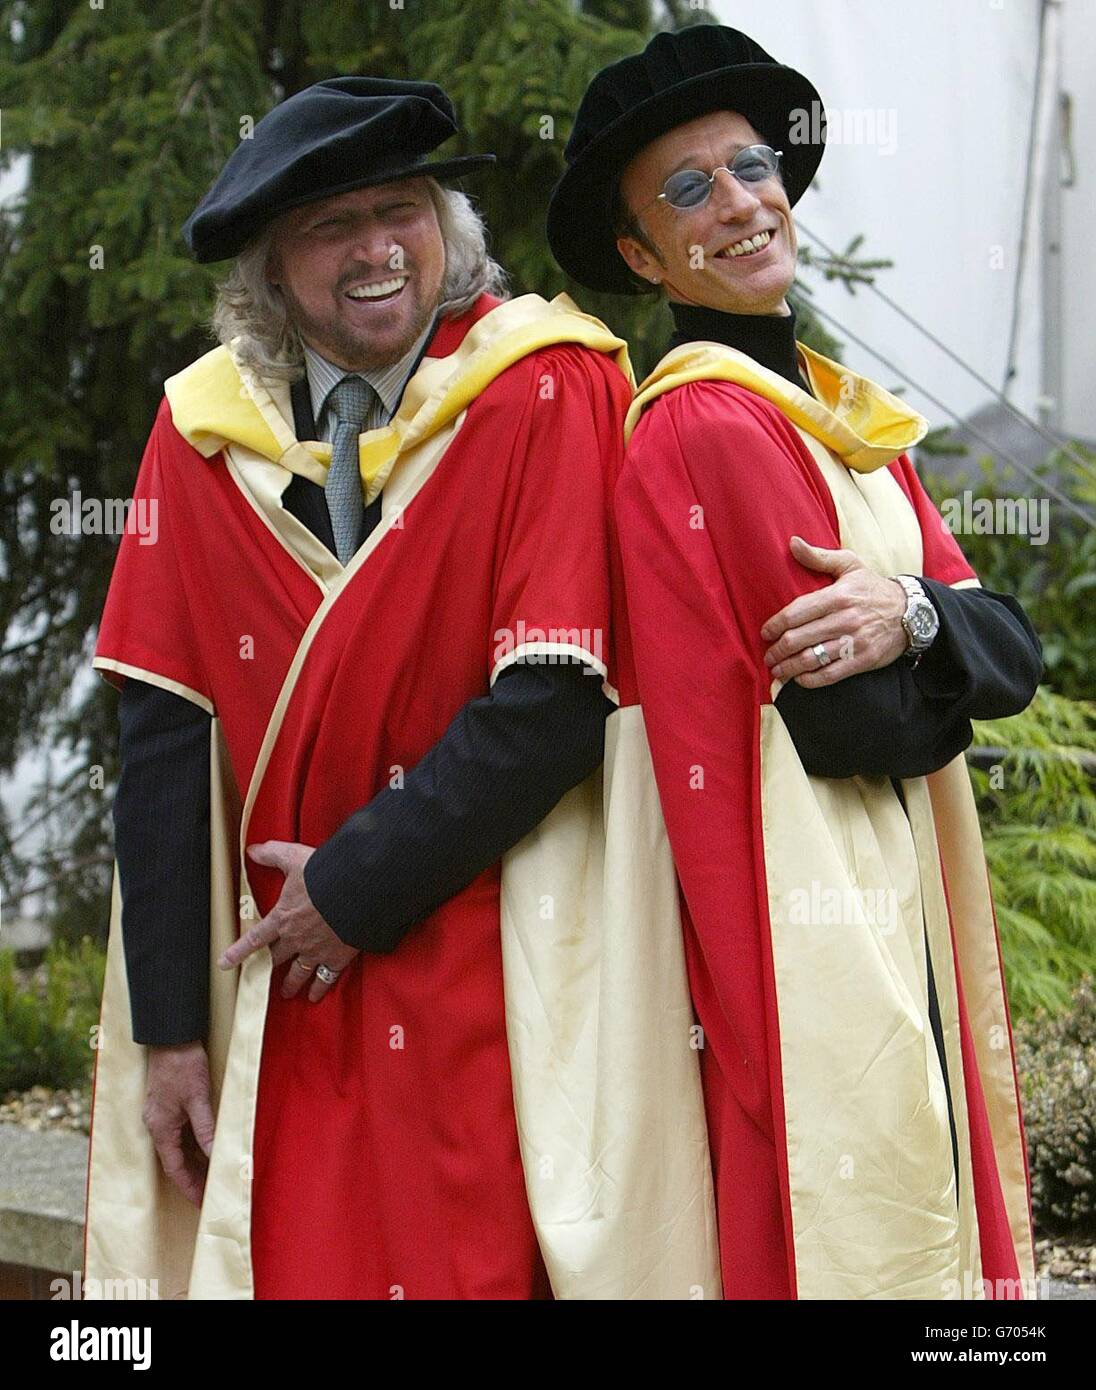 Die Bee Gees, Barry (links) und Robin Gibb posieren für Fotografen, nachdem sie den Ehrendoktortitel (Doktor der Musik) an der Universität von Manchester erhalten haben. Die Brüder nahmen auch einen posthumen Ehrendoktortitel im Namen ihres verstorbenen Bruders Maurice an, der im Januar 2003 starb. Stockfoto